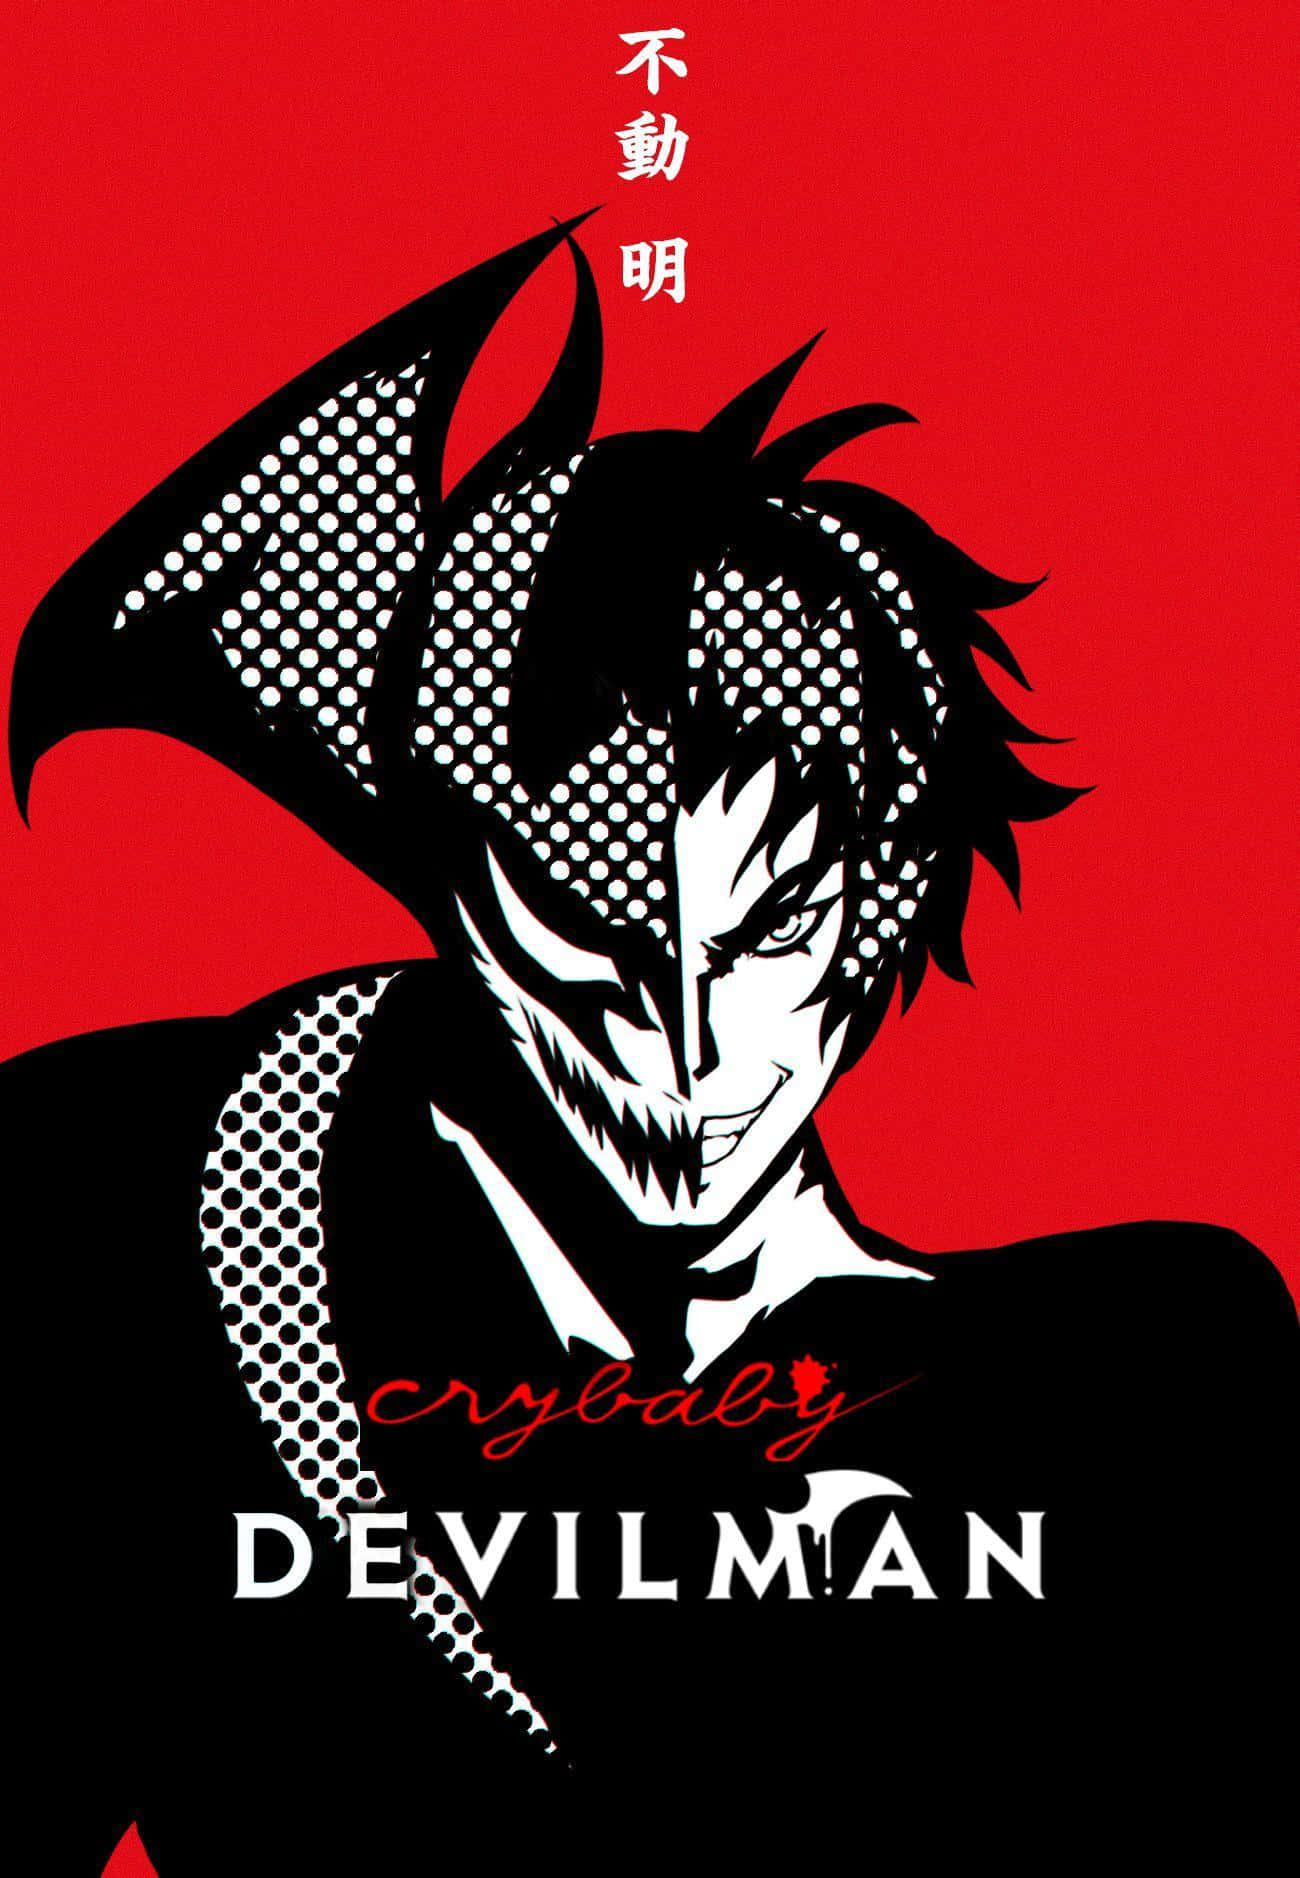 Dämonenverwandlungin Devilman Crybaby